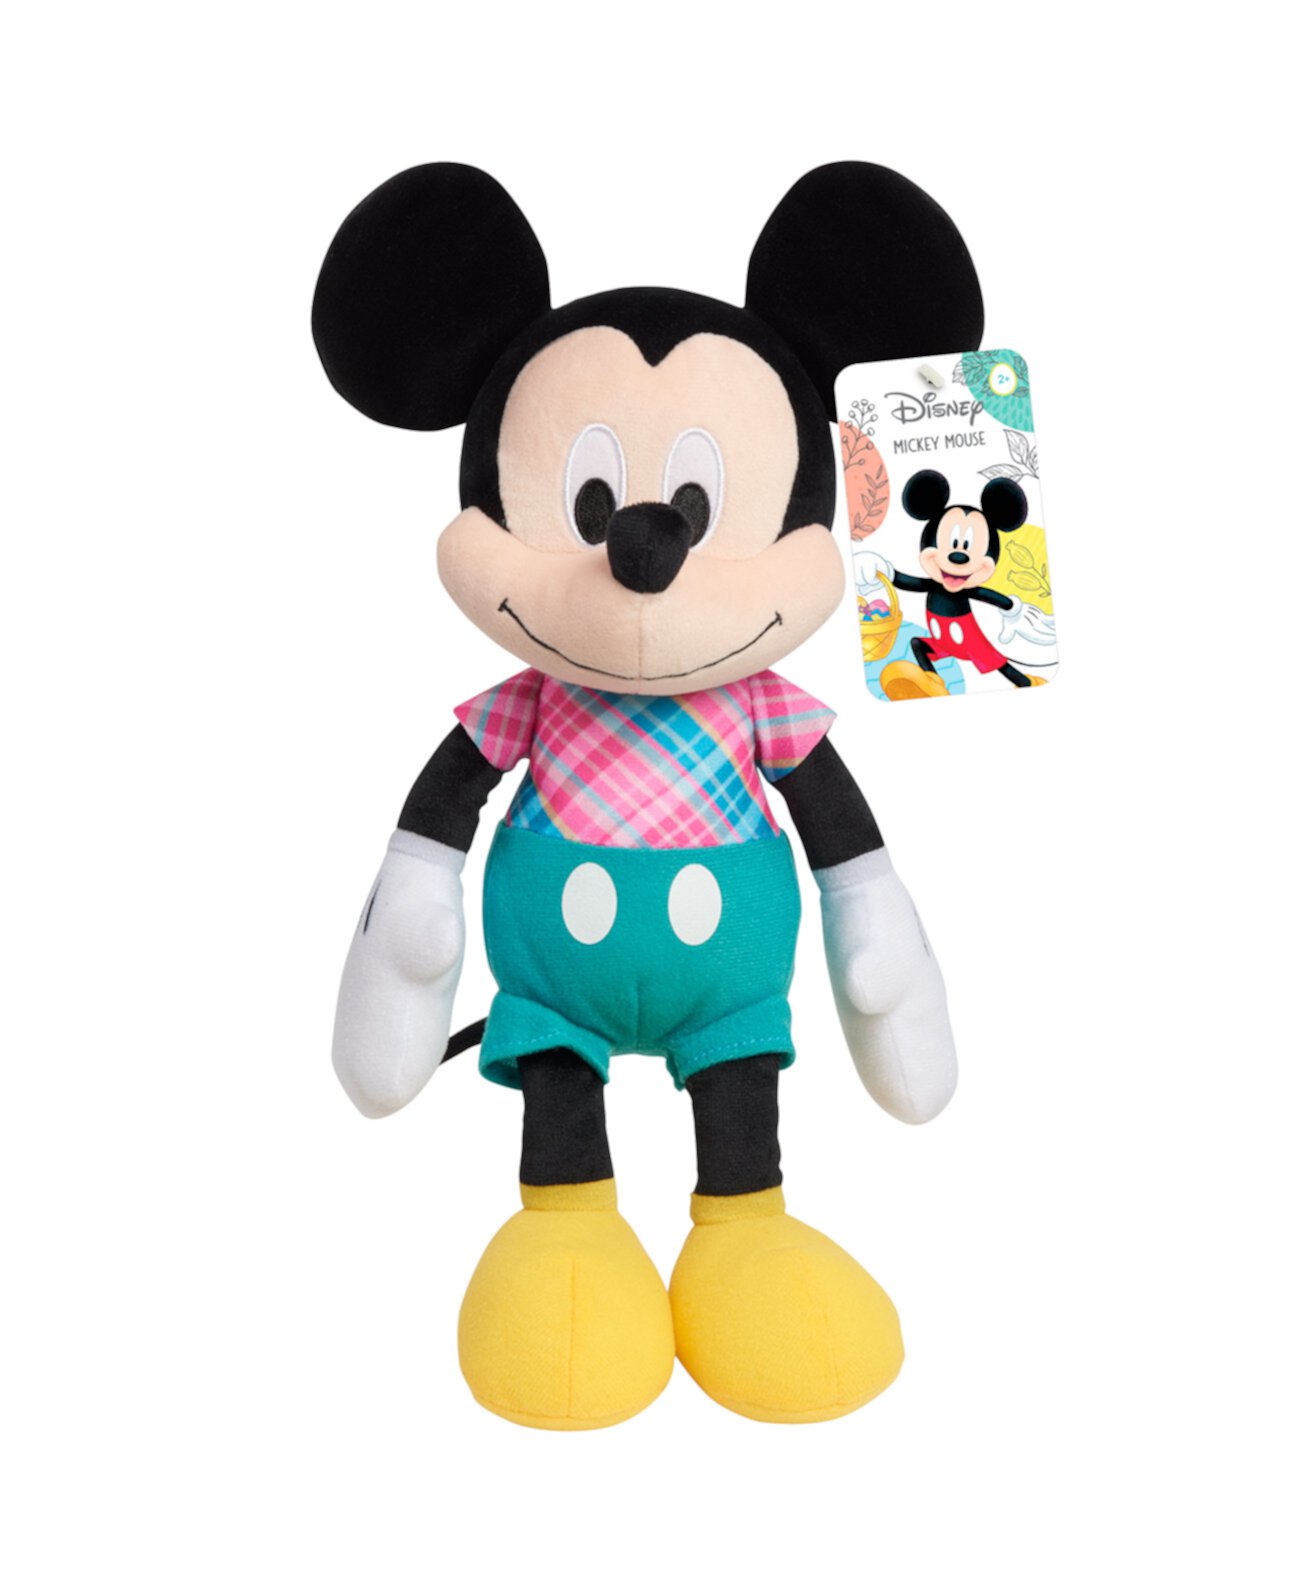 Пасхальная мягкая игрушка Disney размером 14 дюймов среднего размера Mickey Mouse